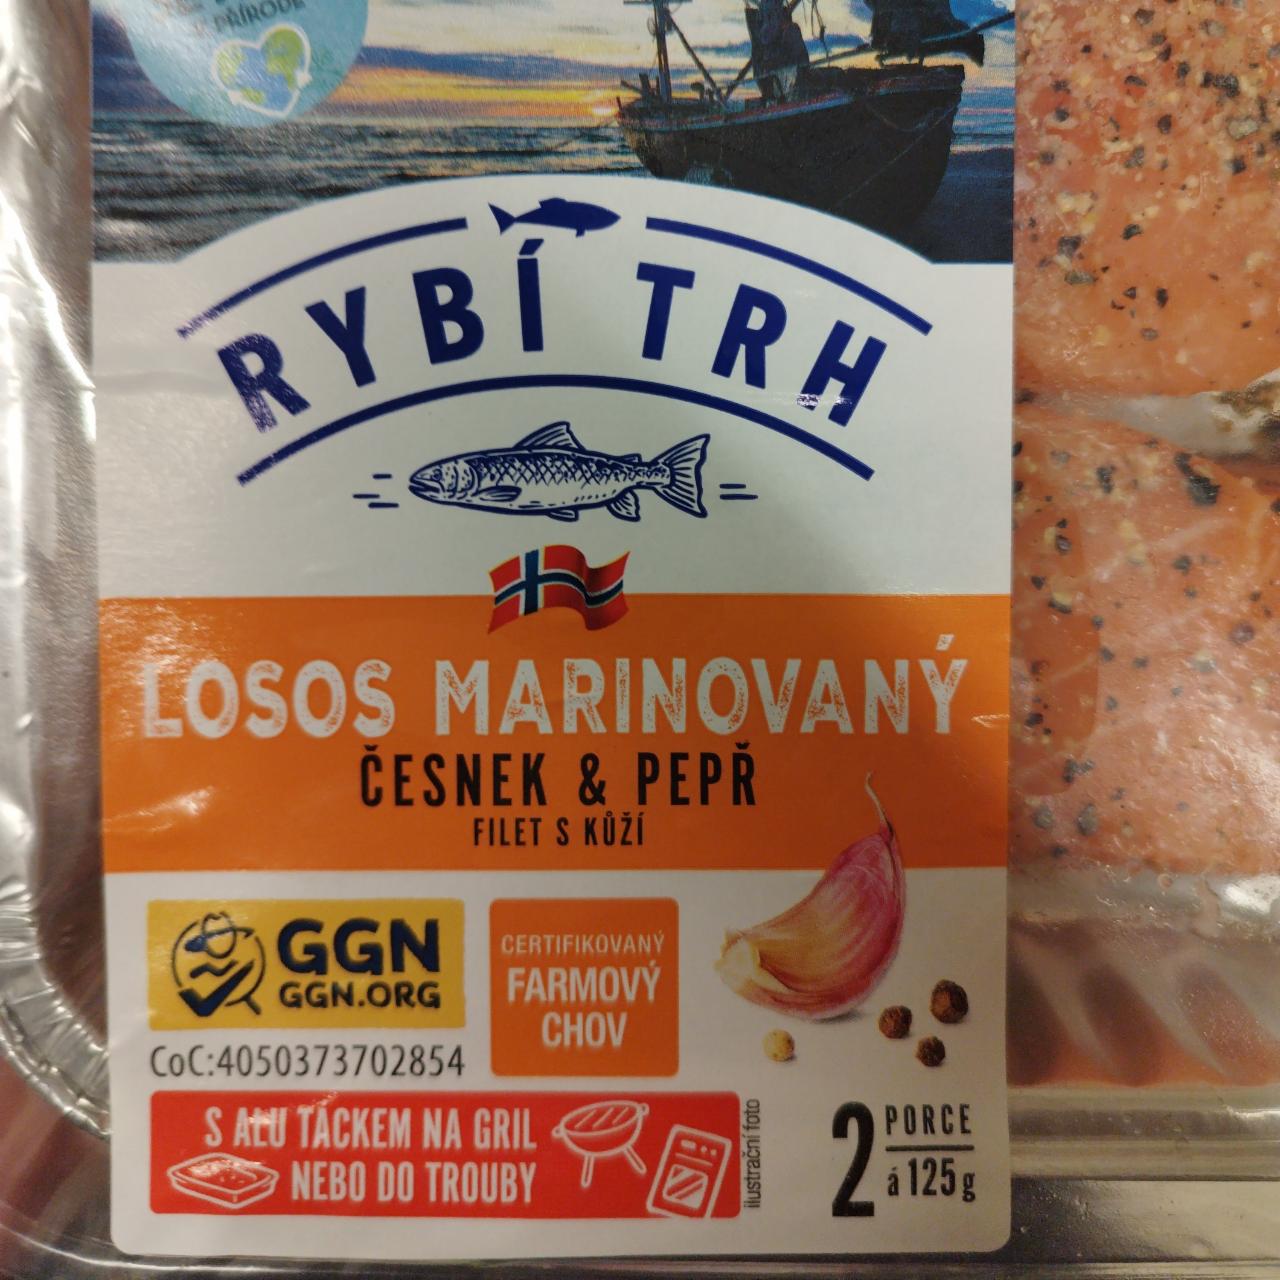 Fotografie - Losos marinovaný česnek & pepř Rybí trh